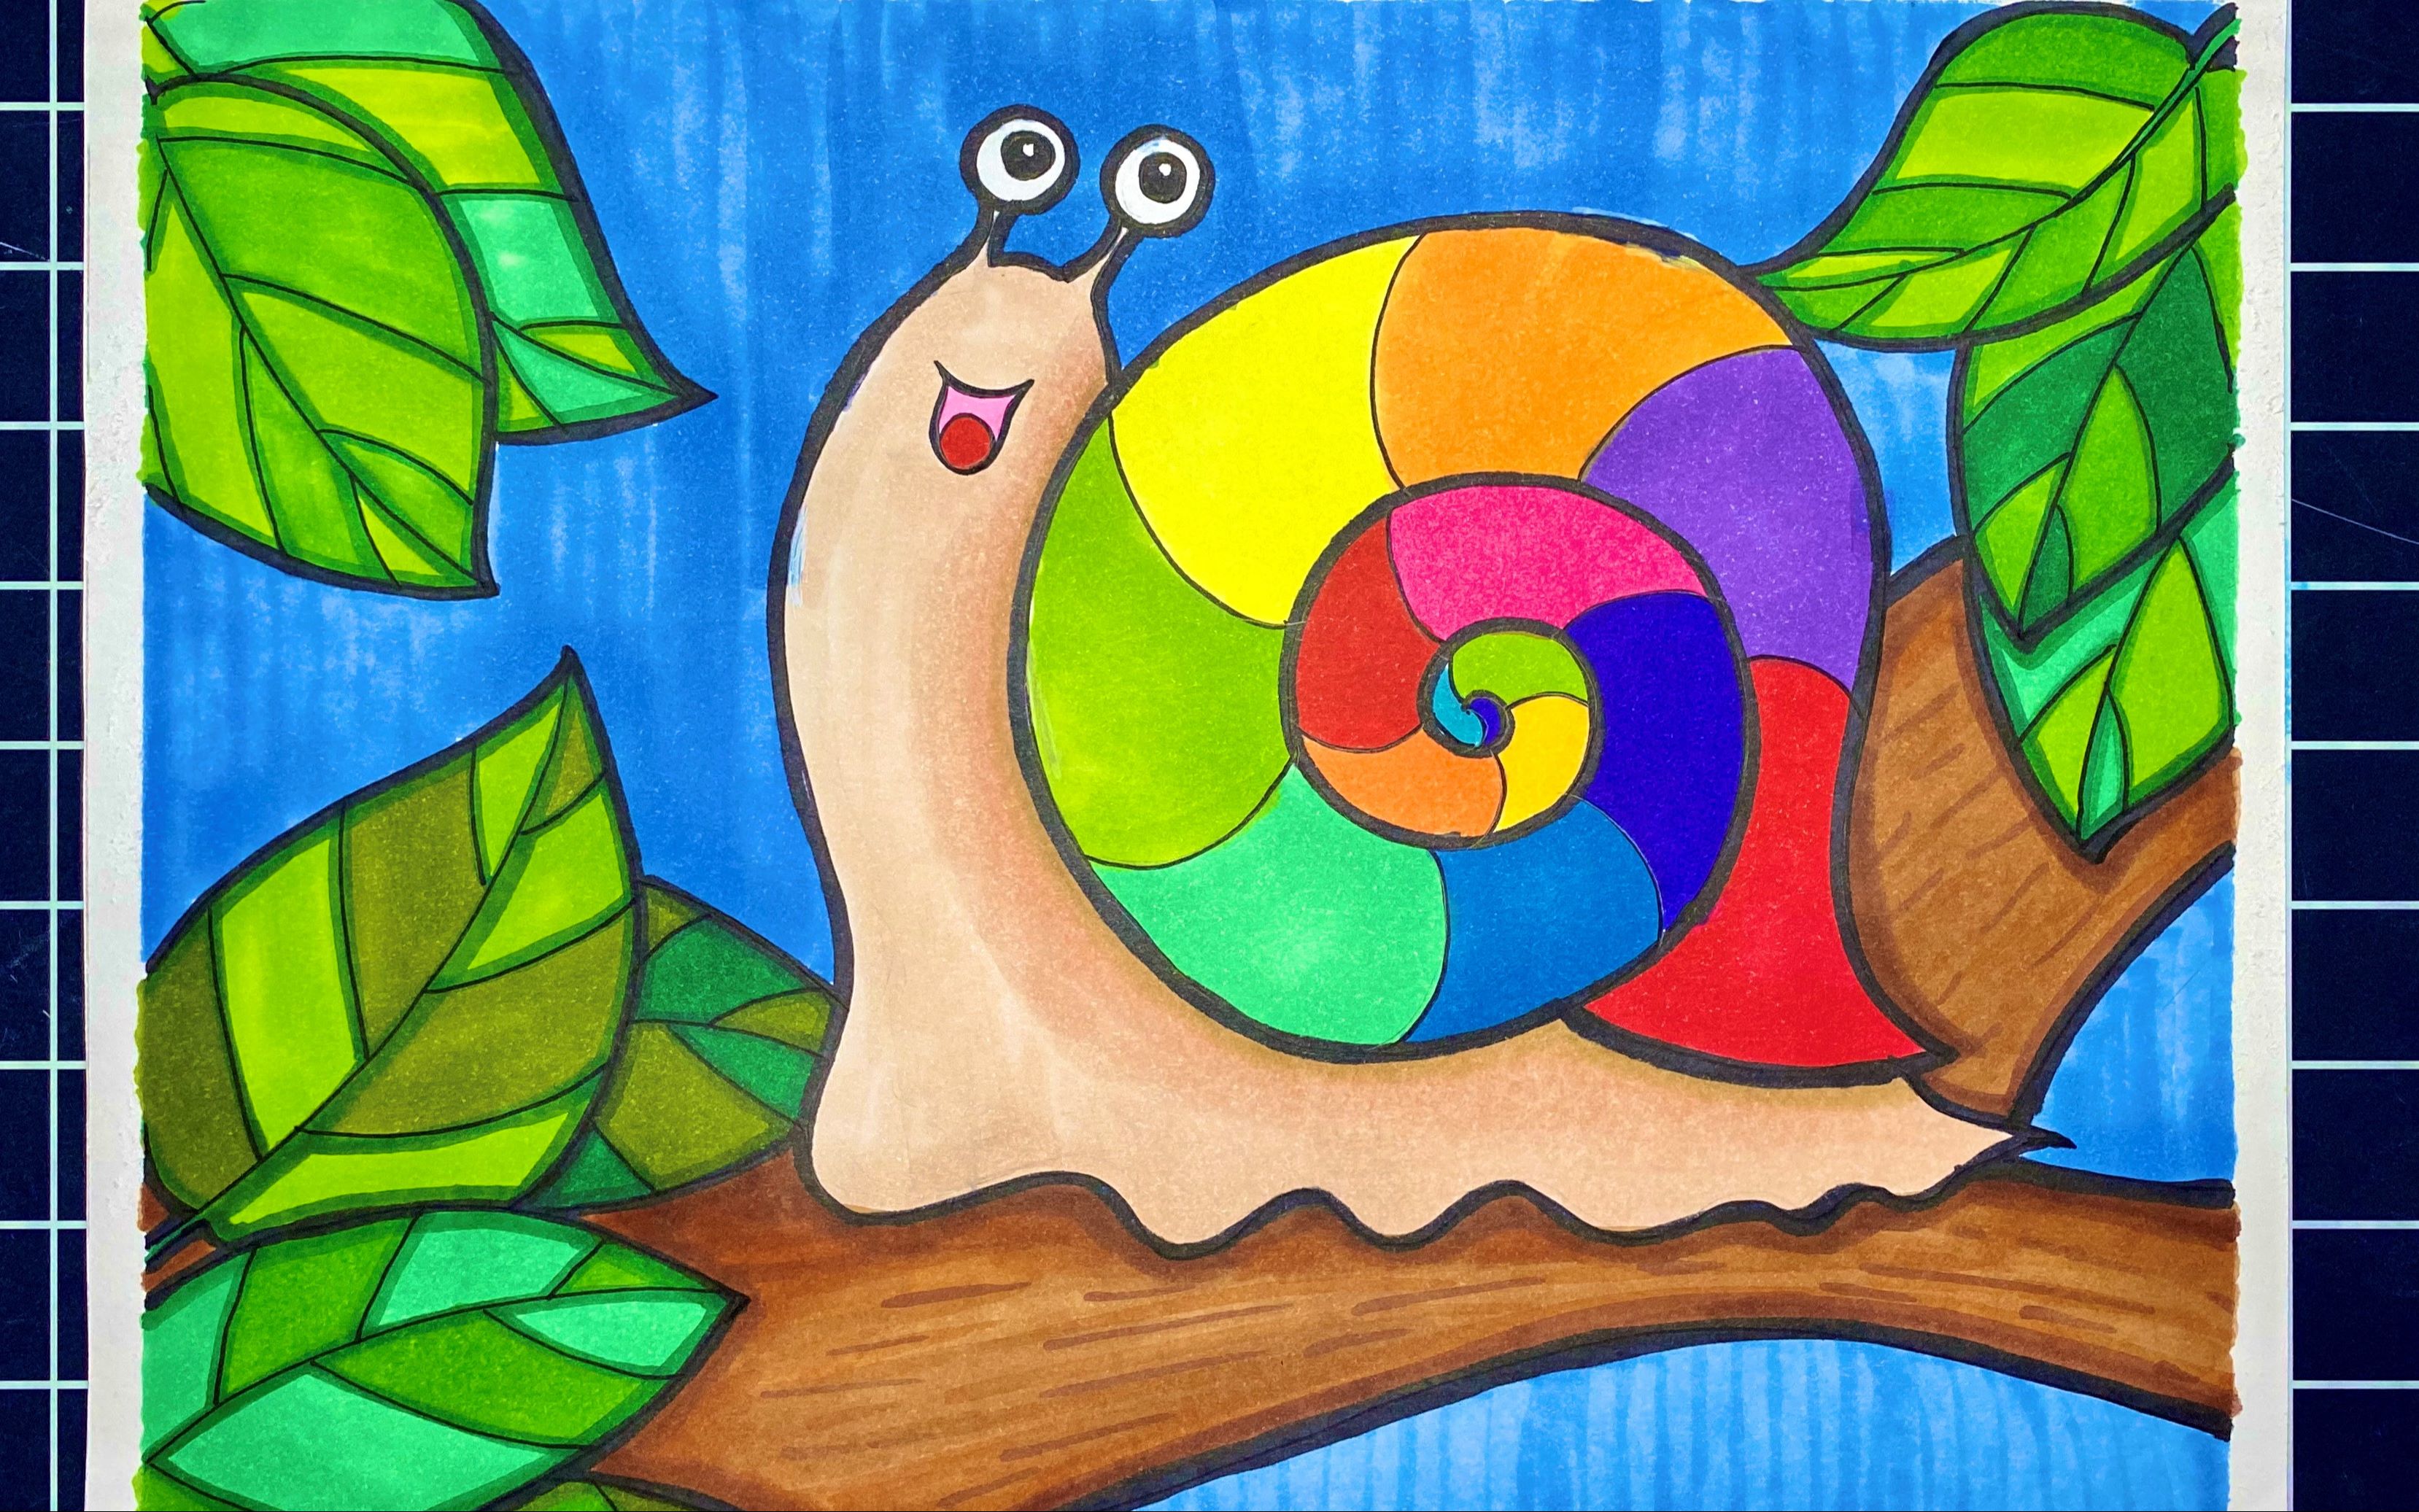 蜗牛壳简笔画彩色图片